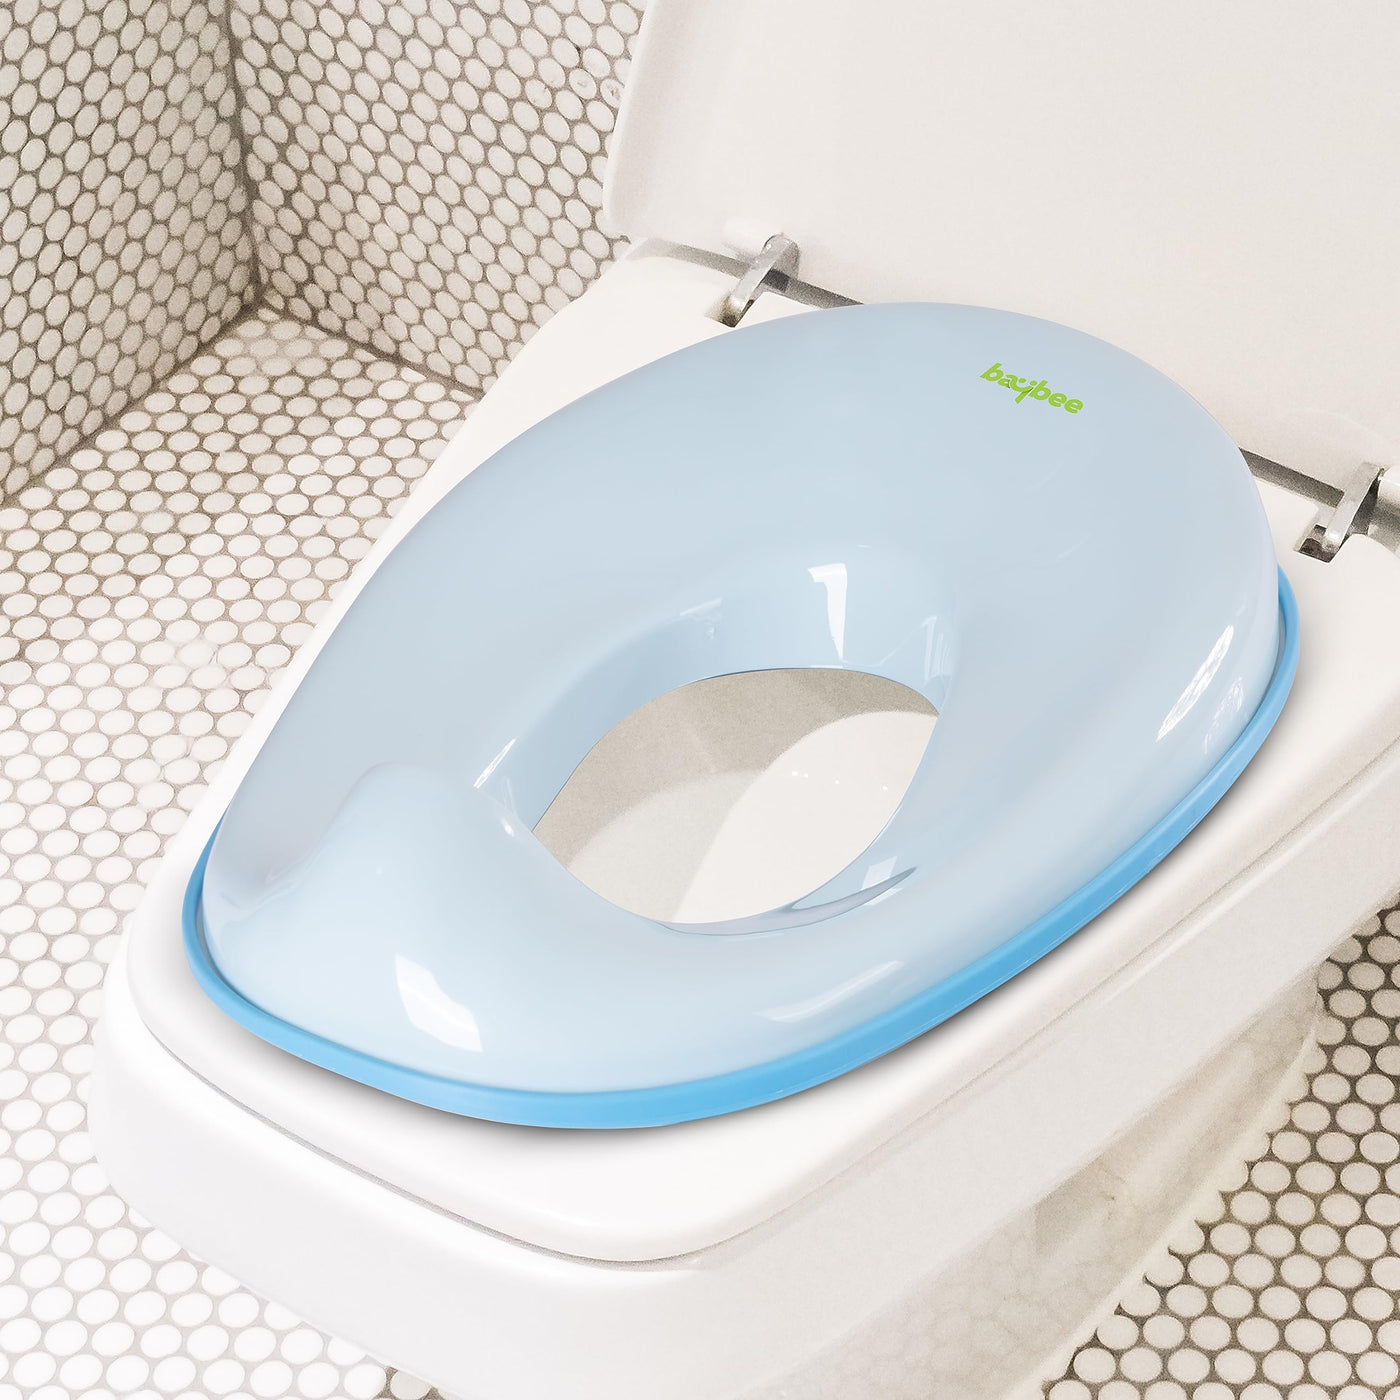 ToyLet Toilet Training Potty, toilet seat cover wipes storage BLUE